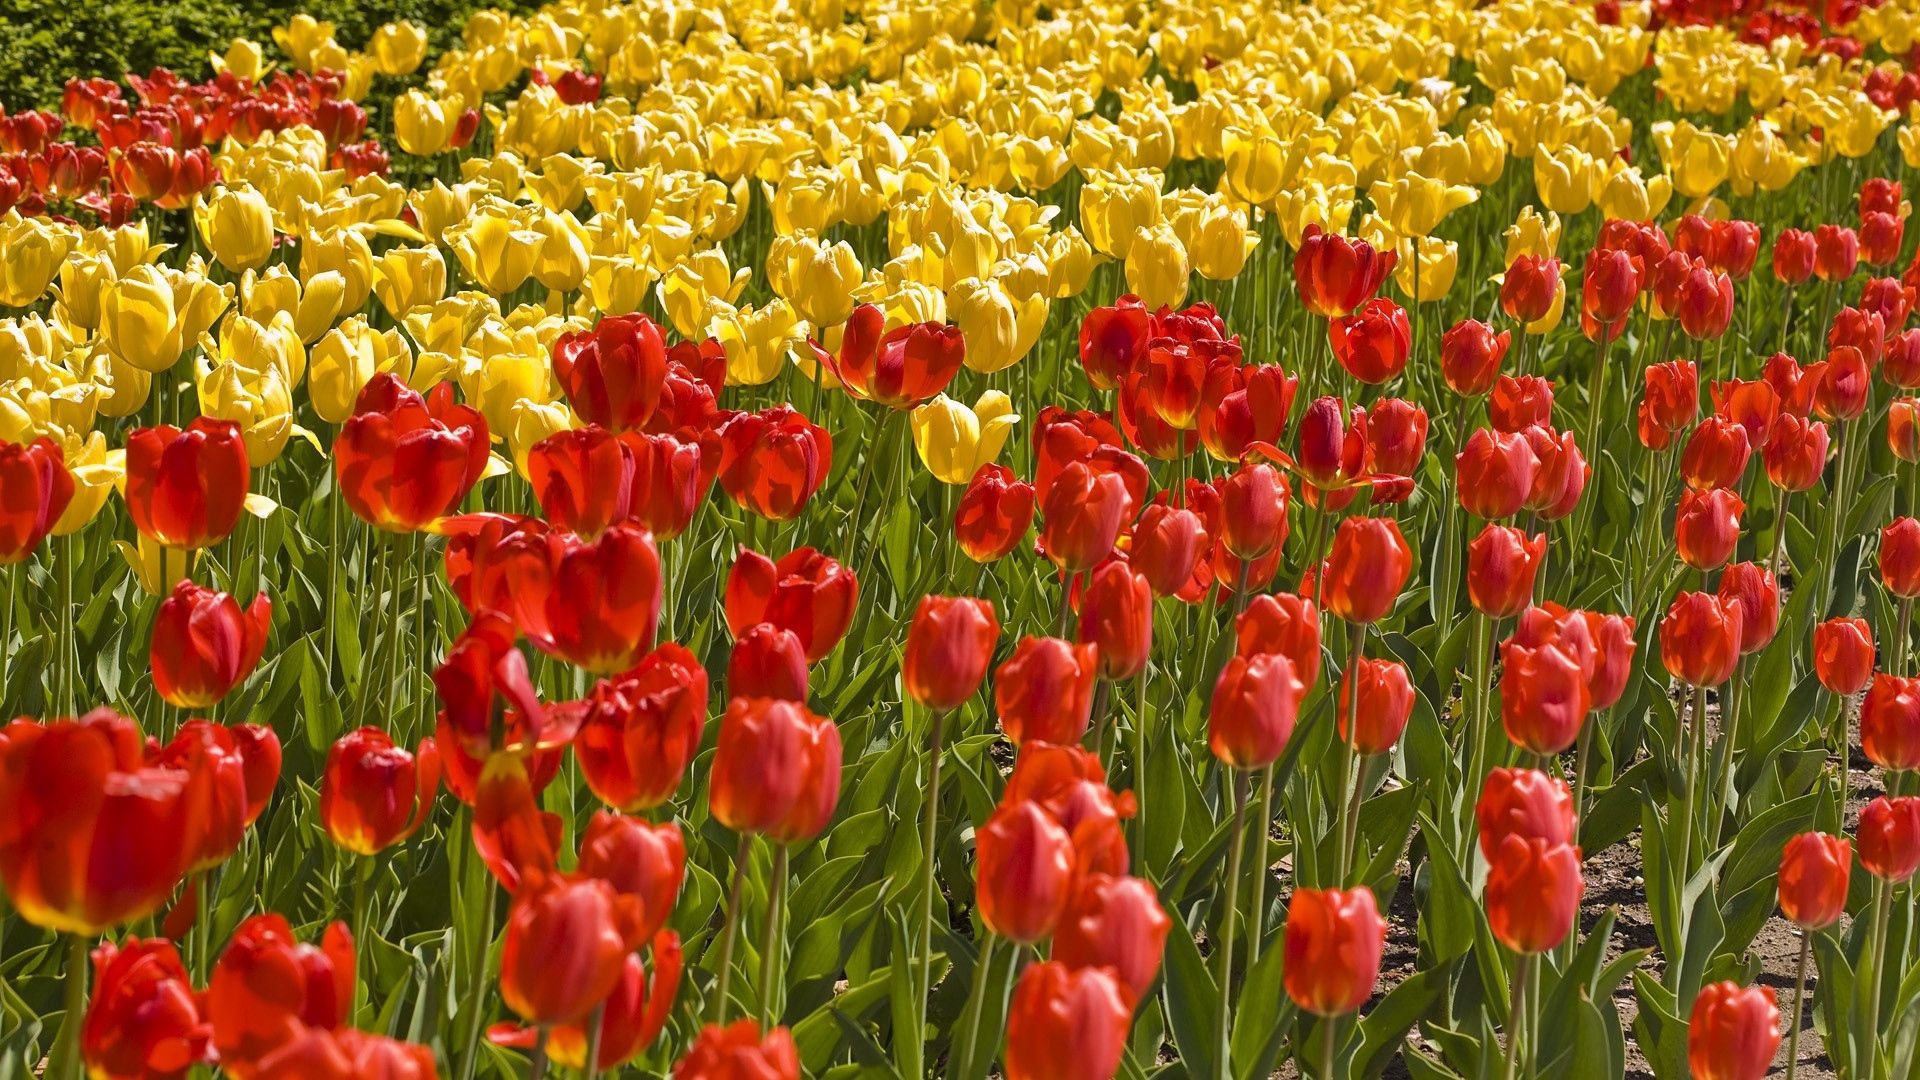 Free HD flowers, grass, tulips, flower bed, flowerbed, field